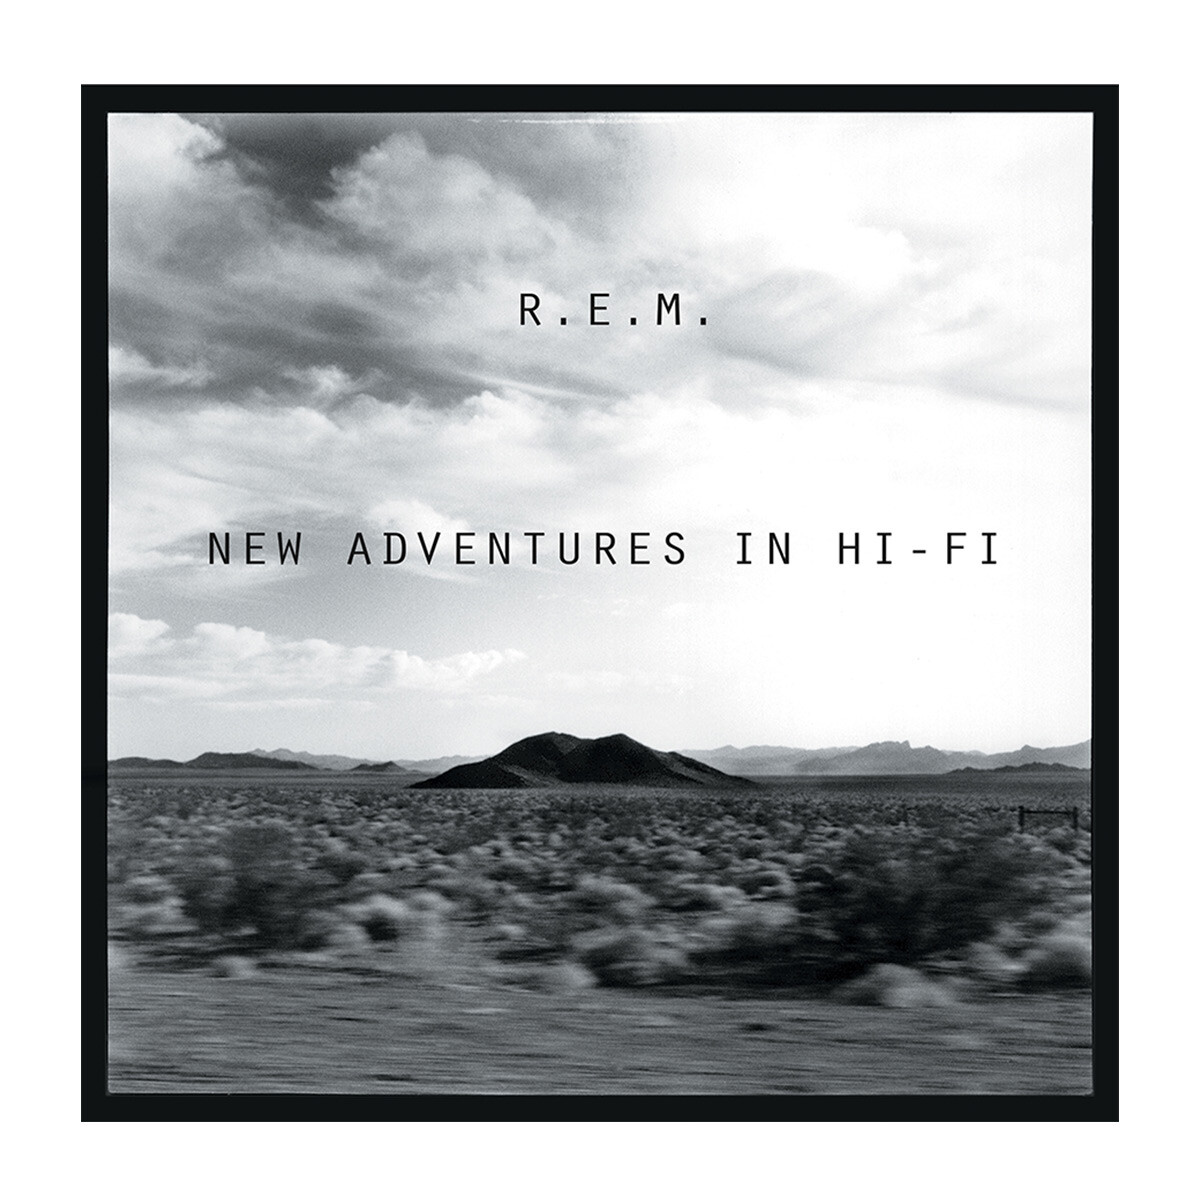 R.e.m. - New Adventures In Hi-fi (25th Anniversary Edition) 